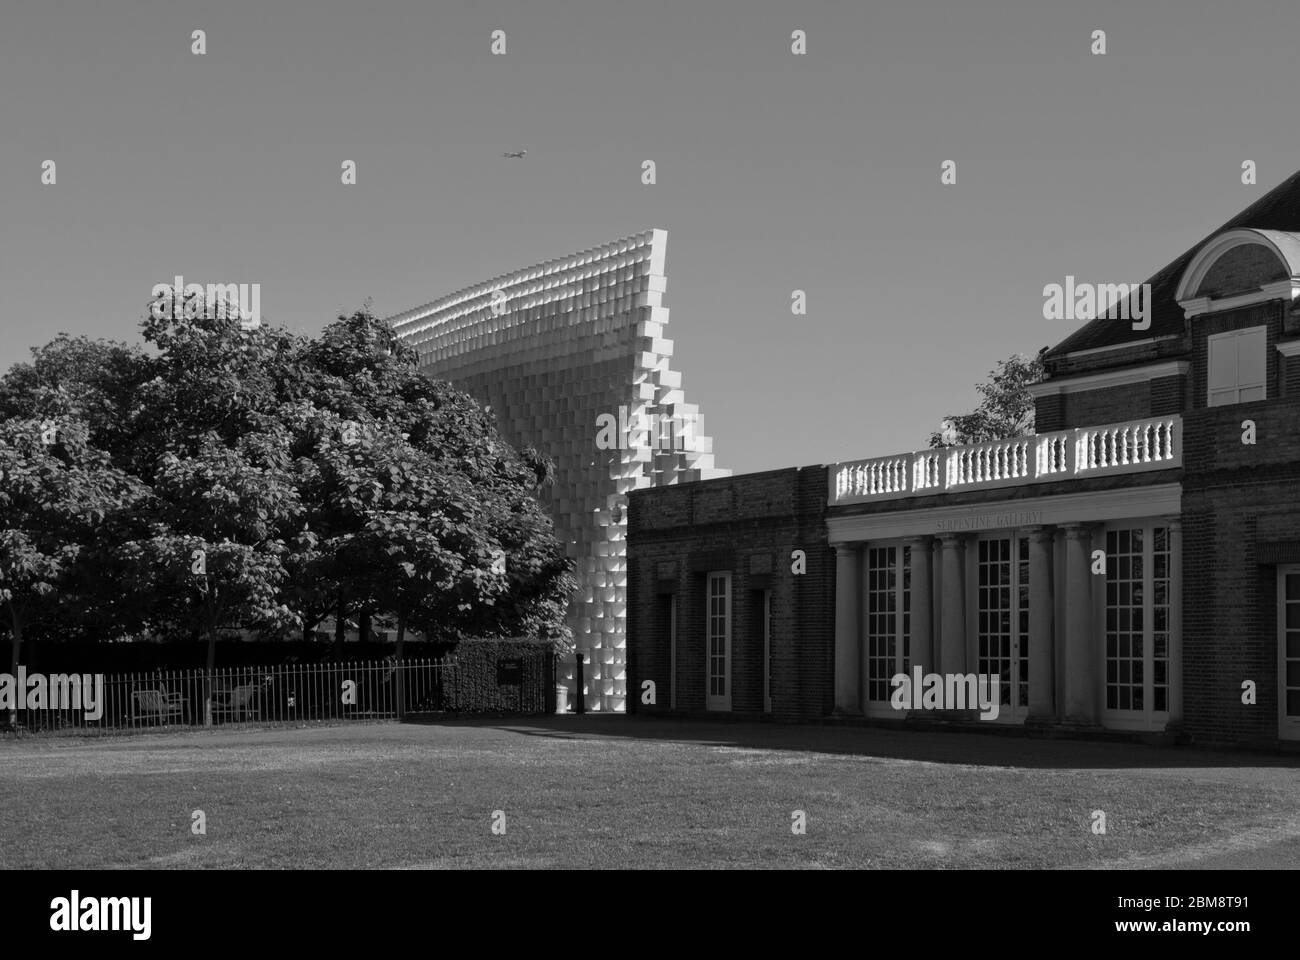 Pavillon d'été Galeries Serpentine Pavillon Serpentine 2016, Kensington Gardens, Londres, W2 3XA par LE GROUPE BIG Bjarke Ingels Banque D'Images